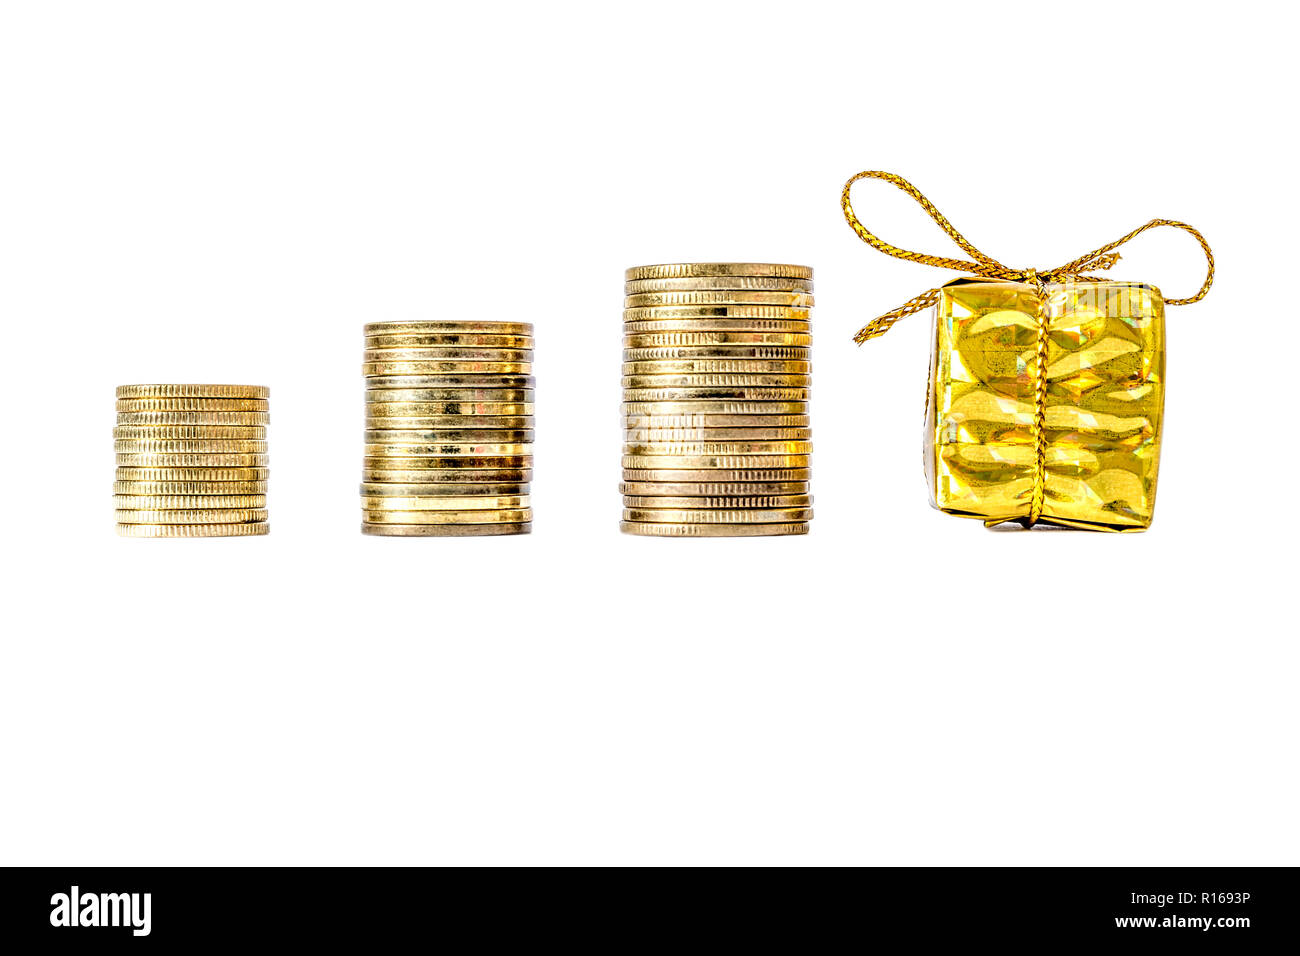 Geschenkbox in Gold Verpackung verband mit einem Bogen neben Münzen Spalte  close-up auf weißem Hintergrund Stockfotografie - Alamy